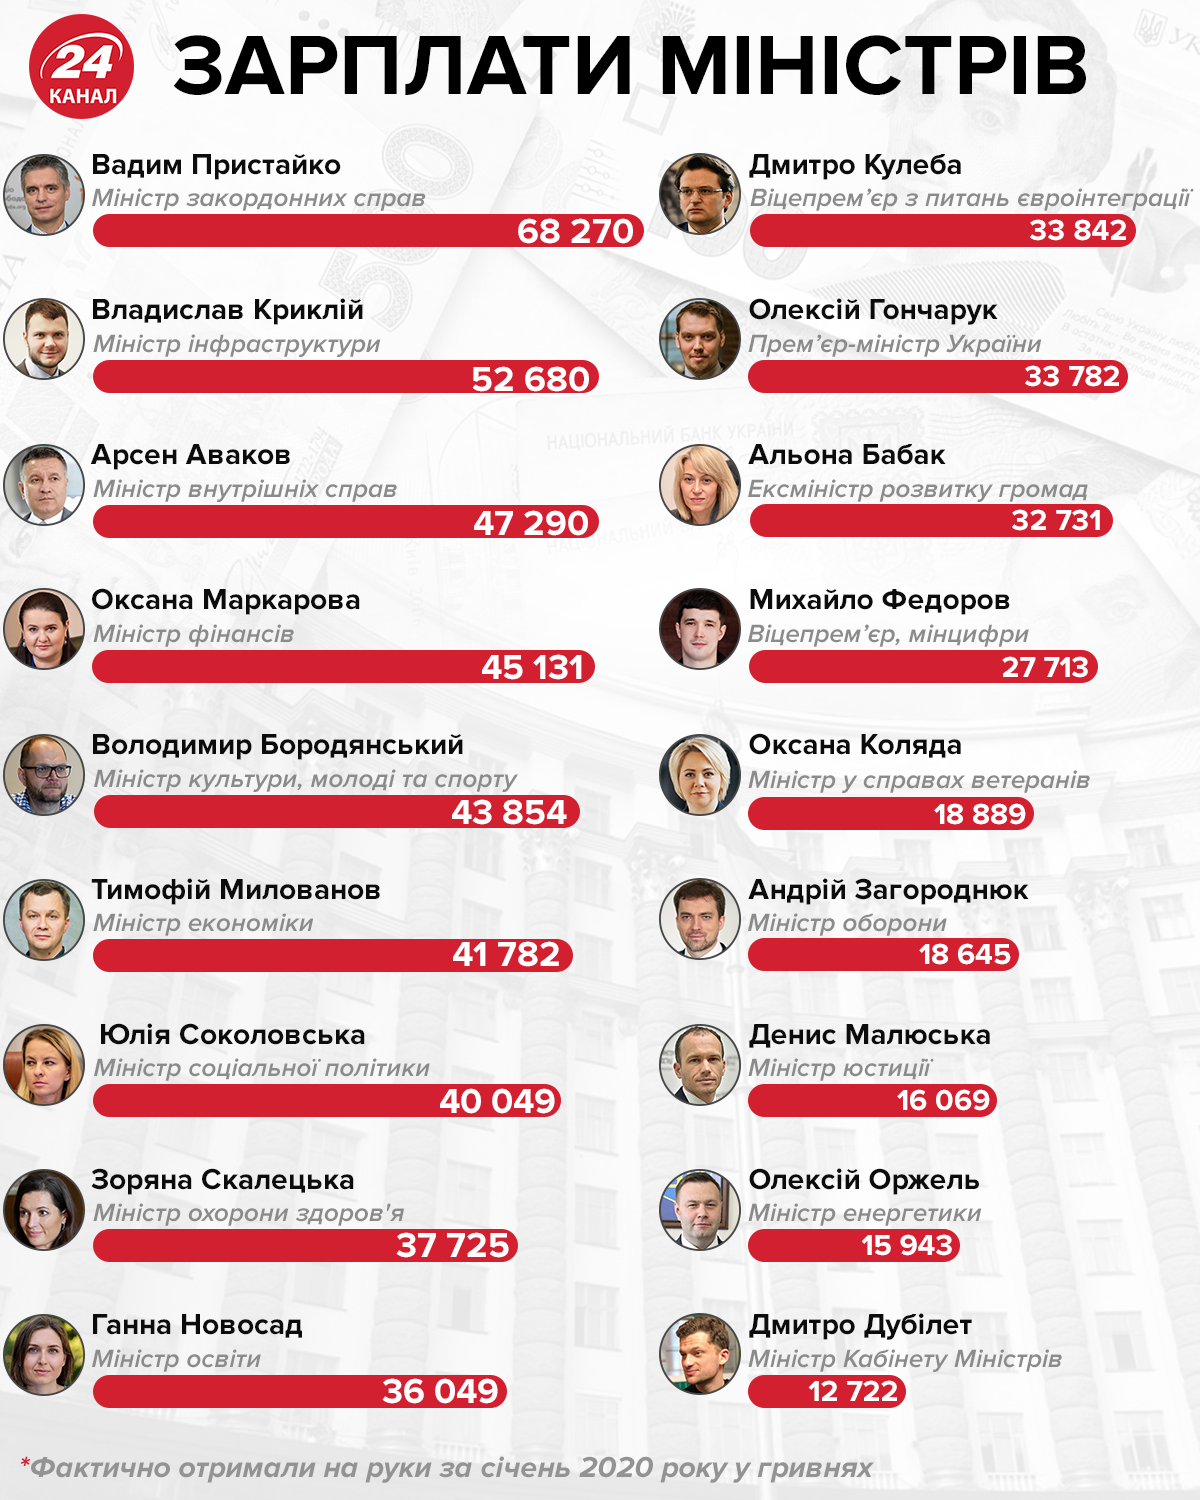 Зарплата міністрів України інфографіка 24 канал